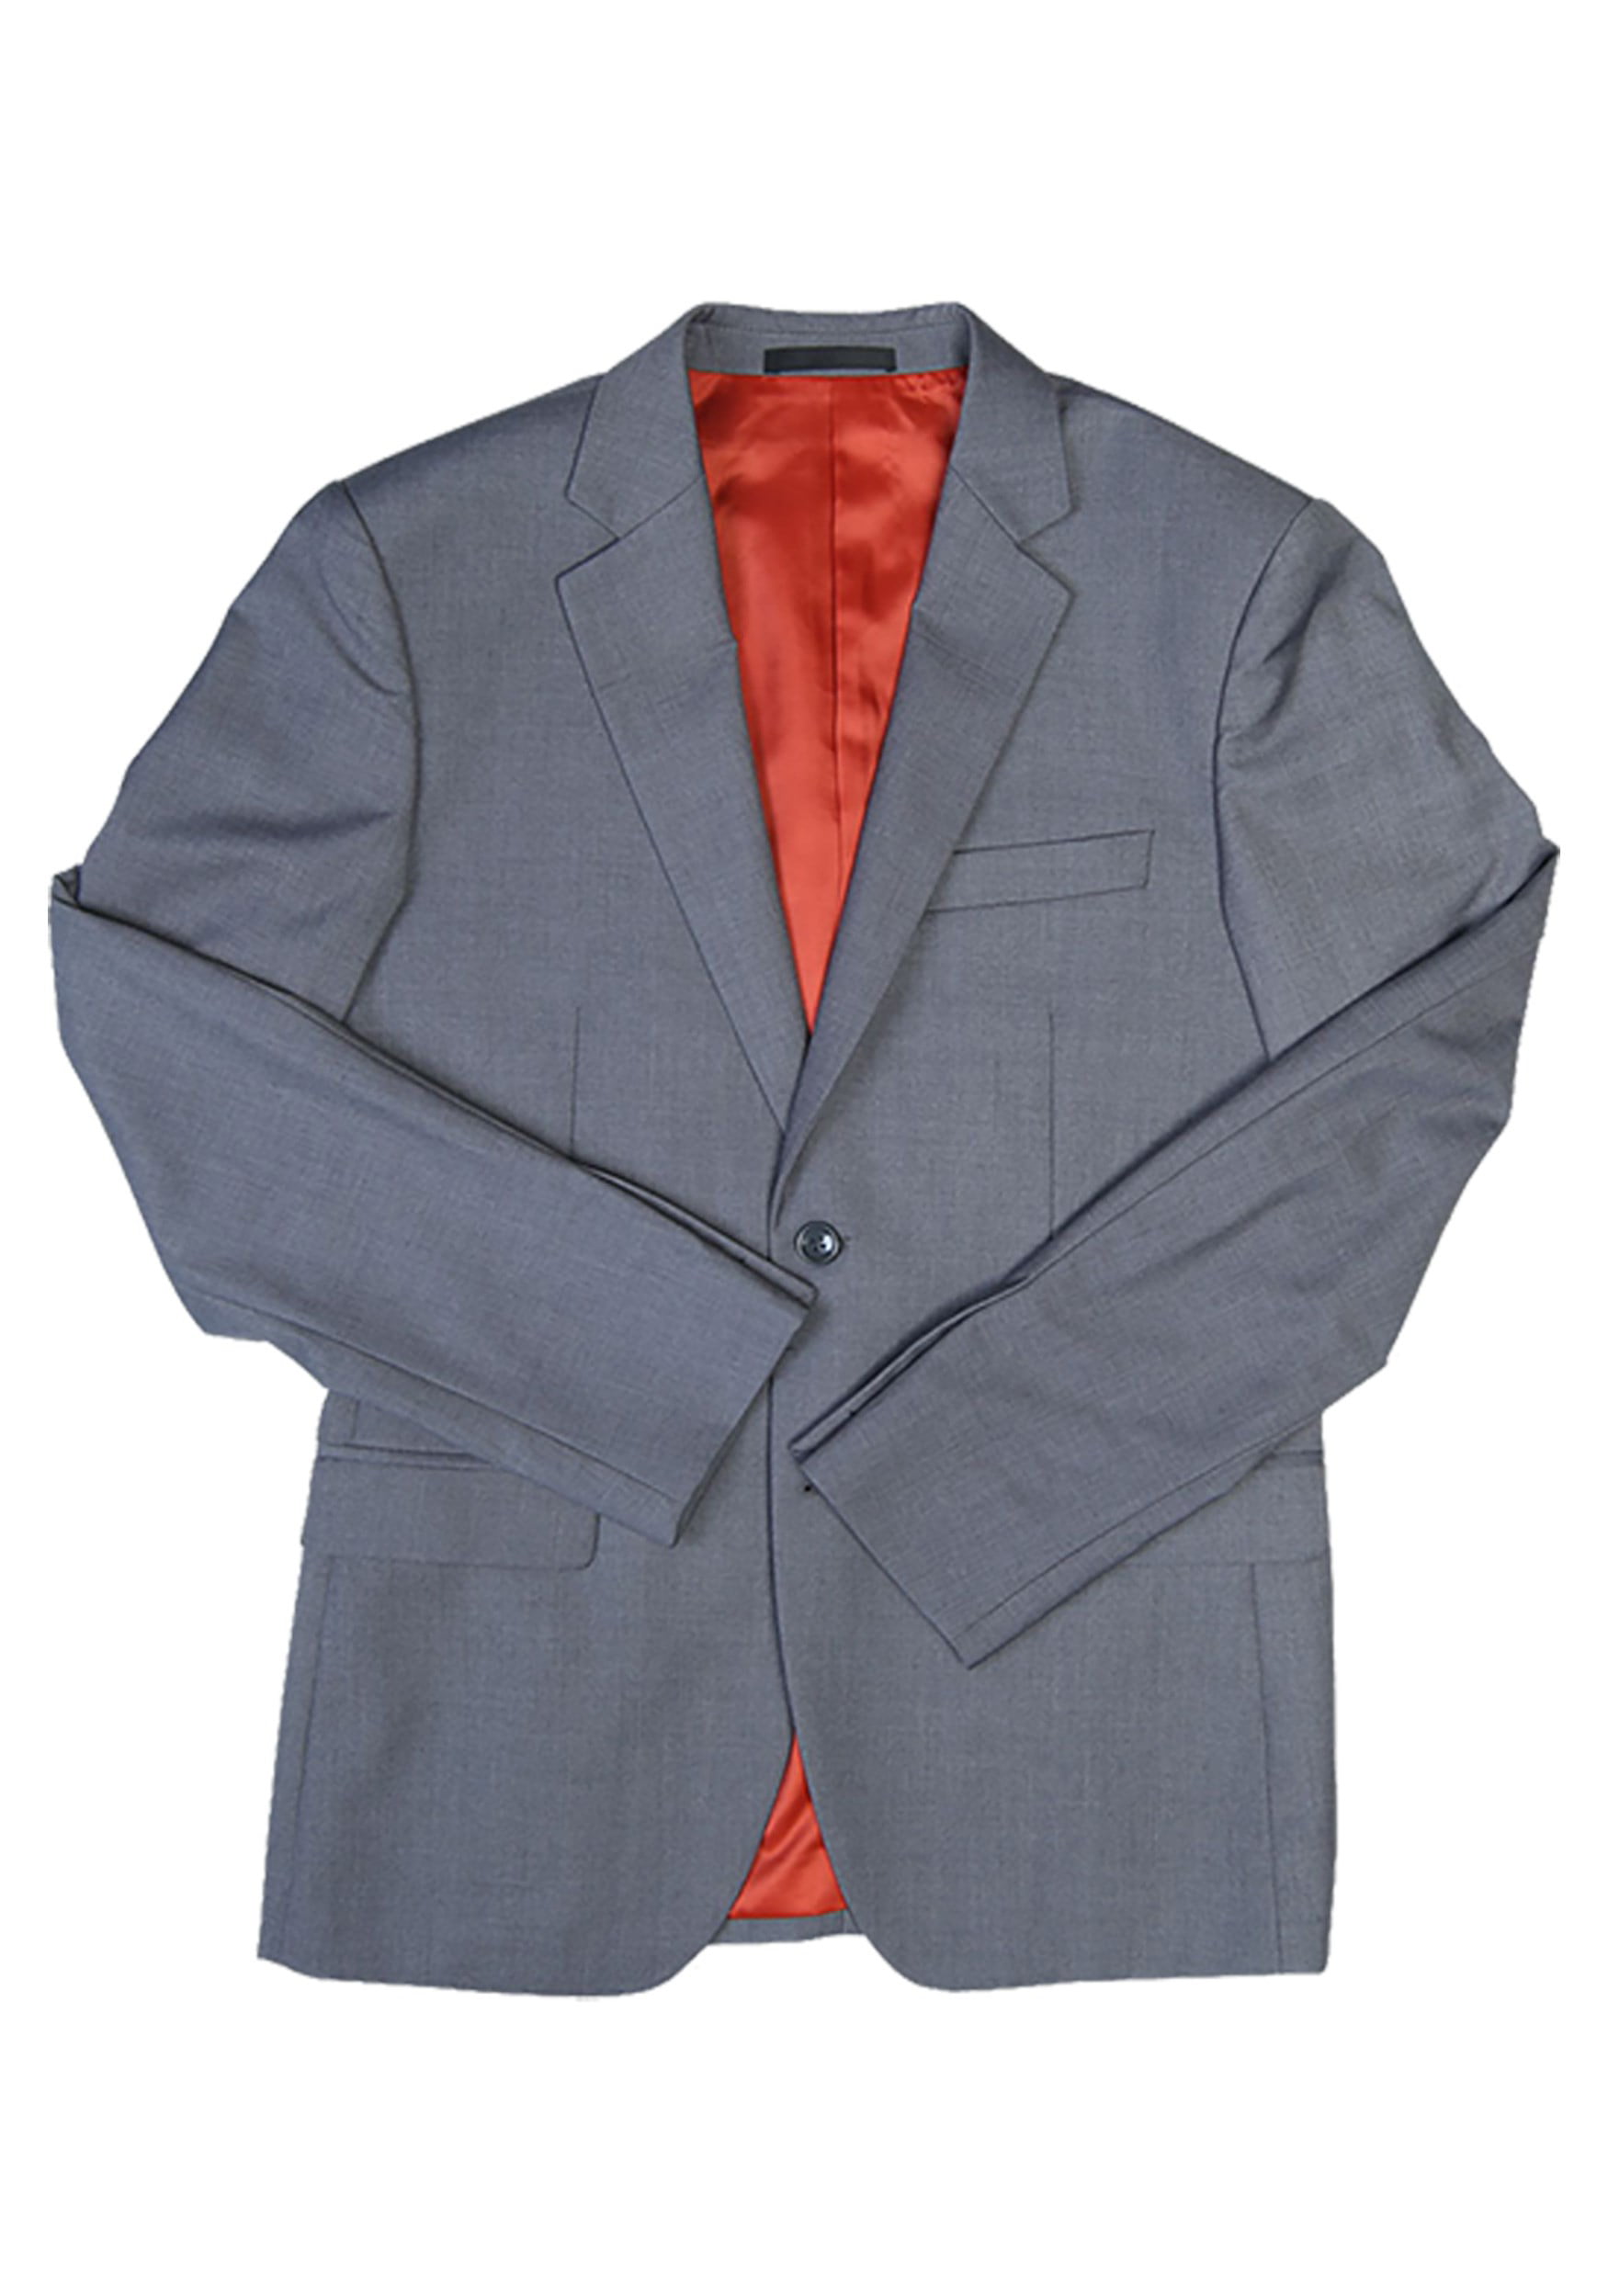 Authentic THE JOKER Suit Jacket